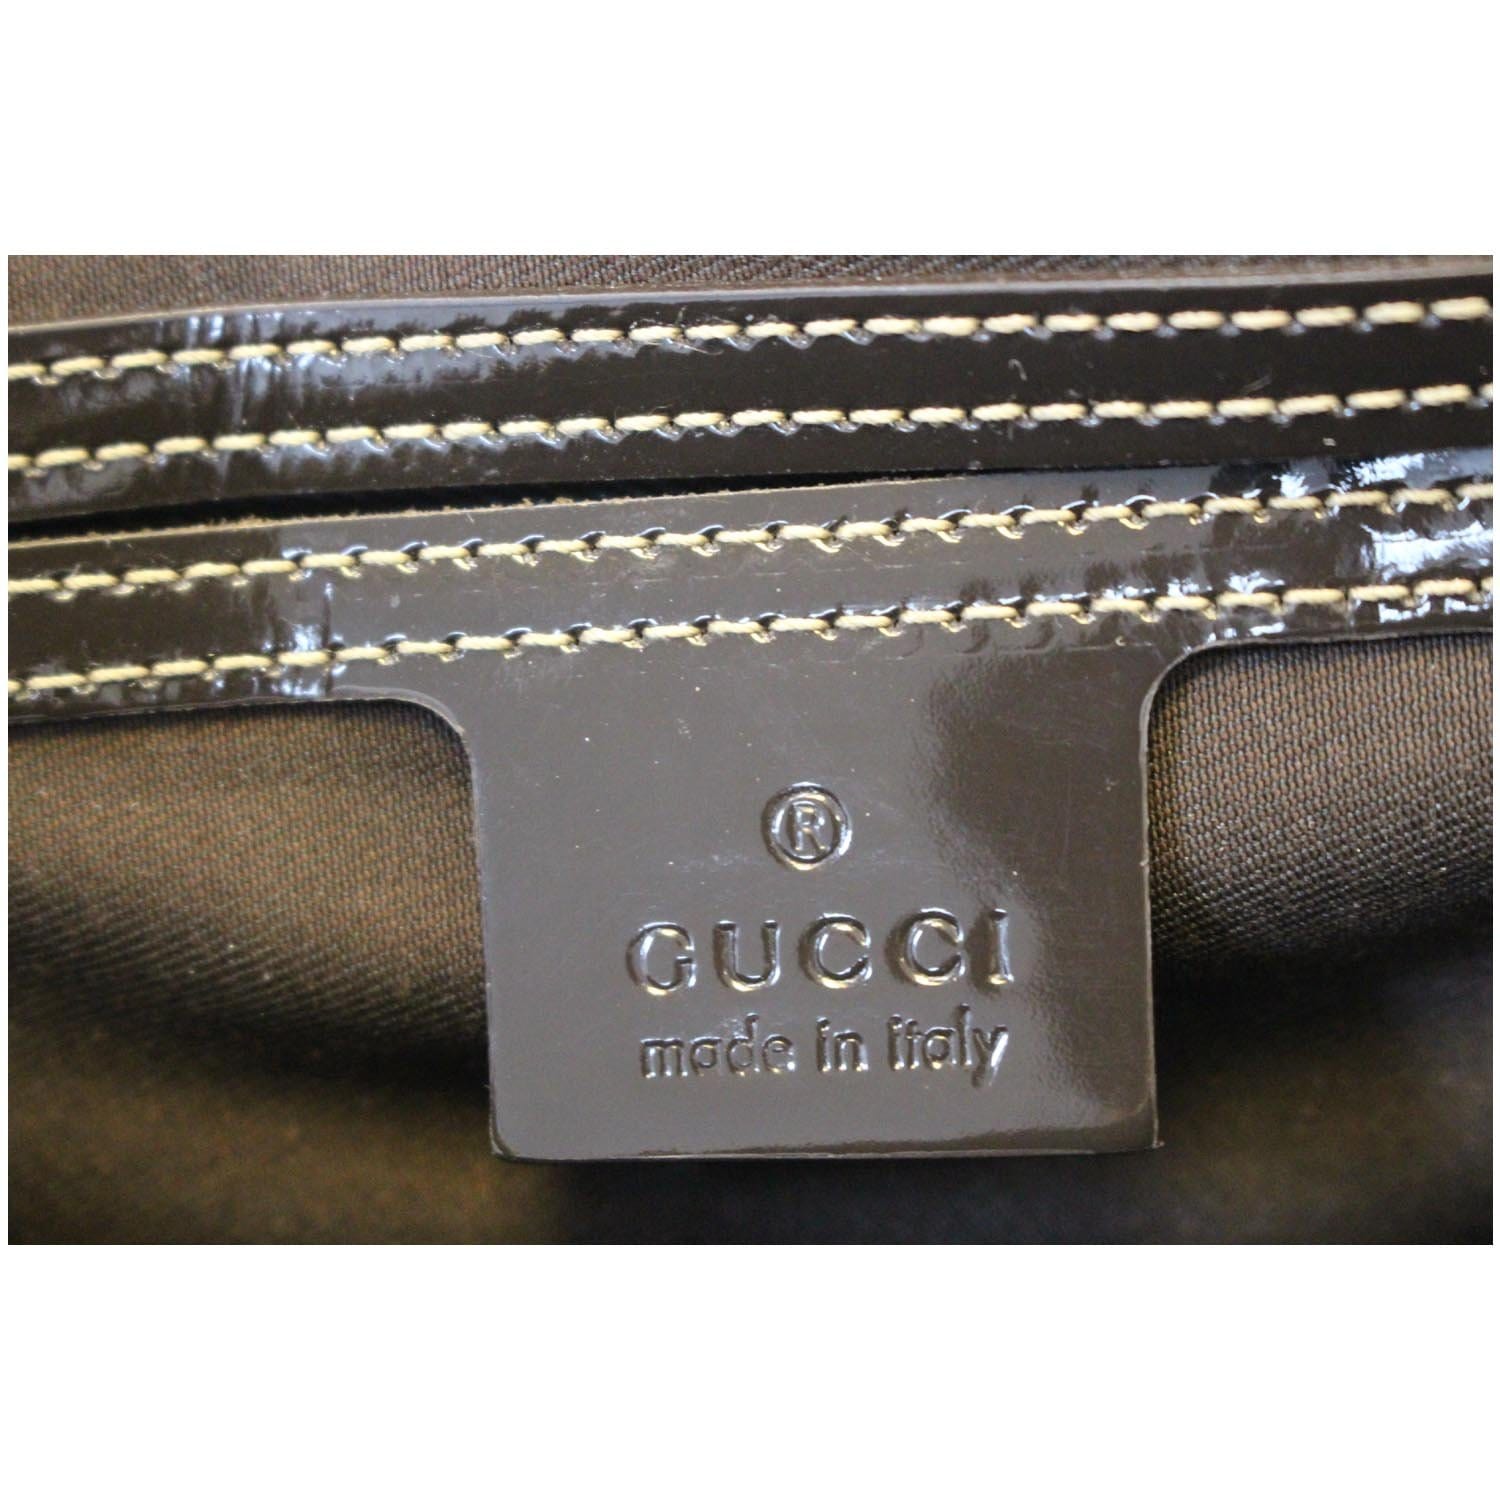 gucci 193603 001998 joy boston bag, dark brown gg supreme monogram canvas,  silver hardware, no dust cover